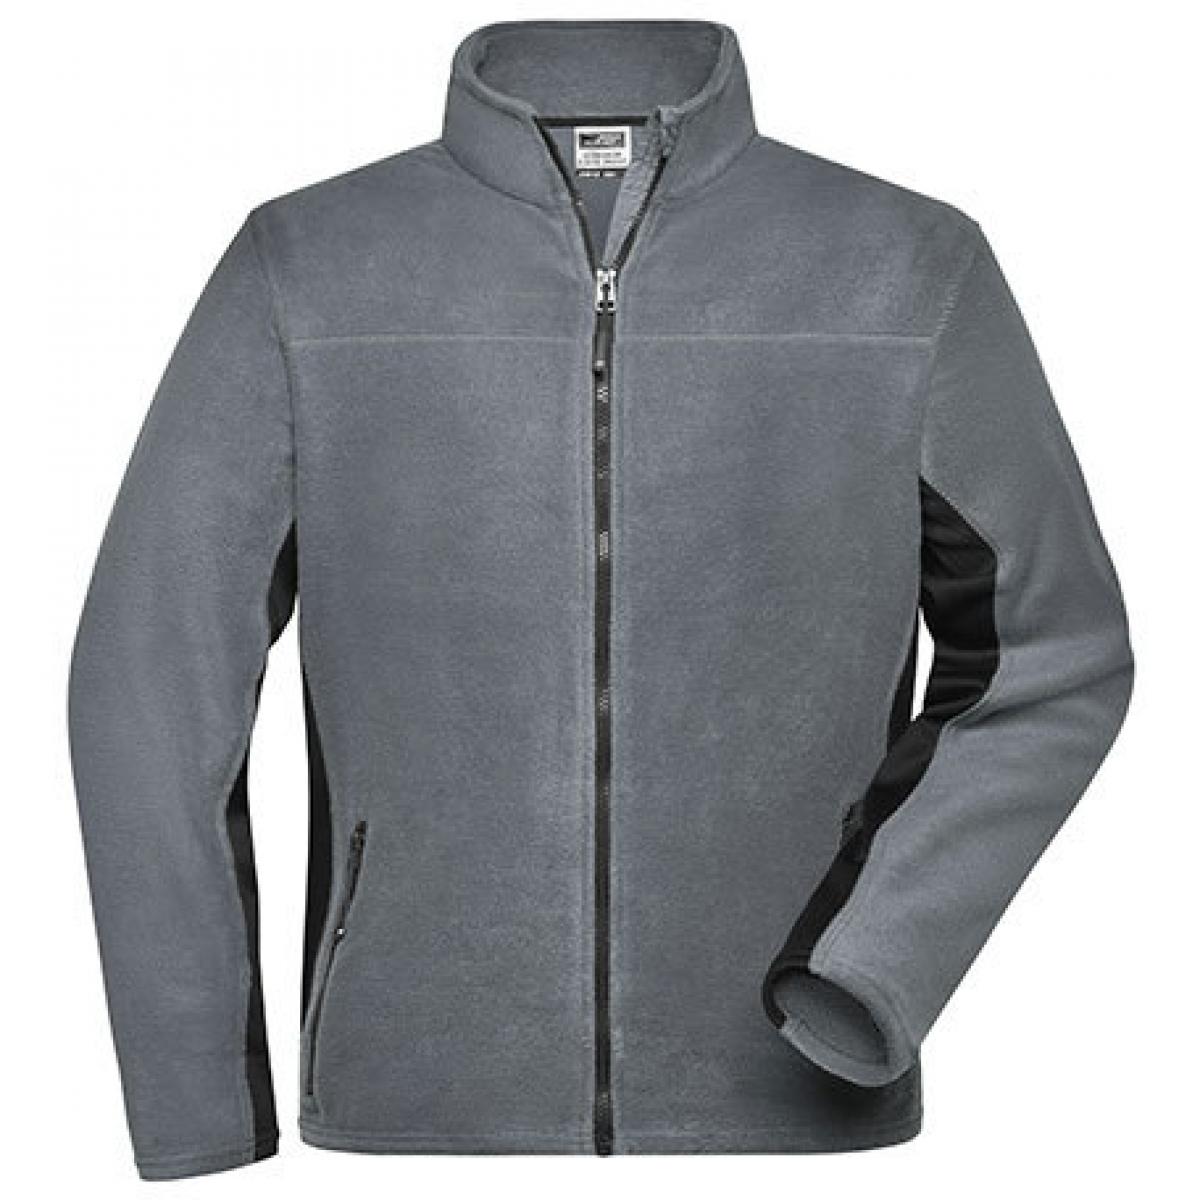 Hersteller: James+Nicholson Herstellernummer: JN842 Artikelbezeichnung: Herren Jacke, Men‘s Workwear Fleece Jacket -STRONG- Farbe: Carbon/Black